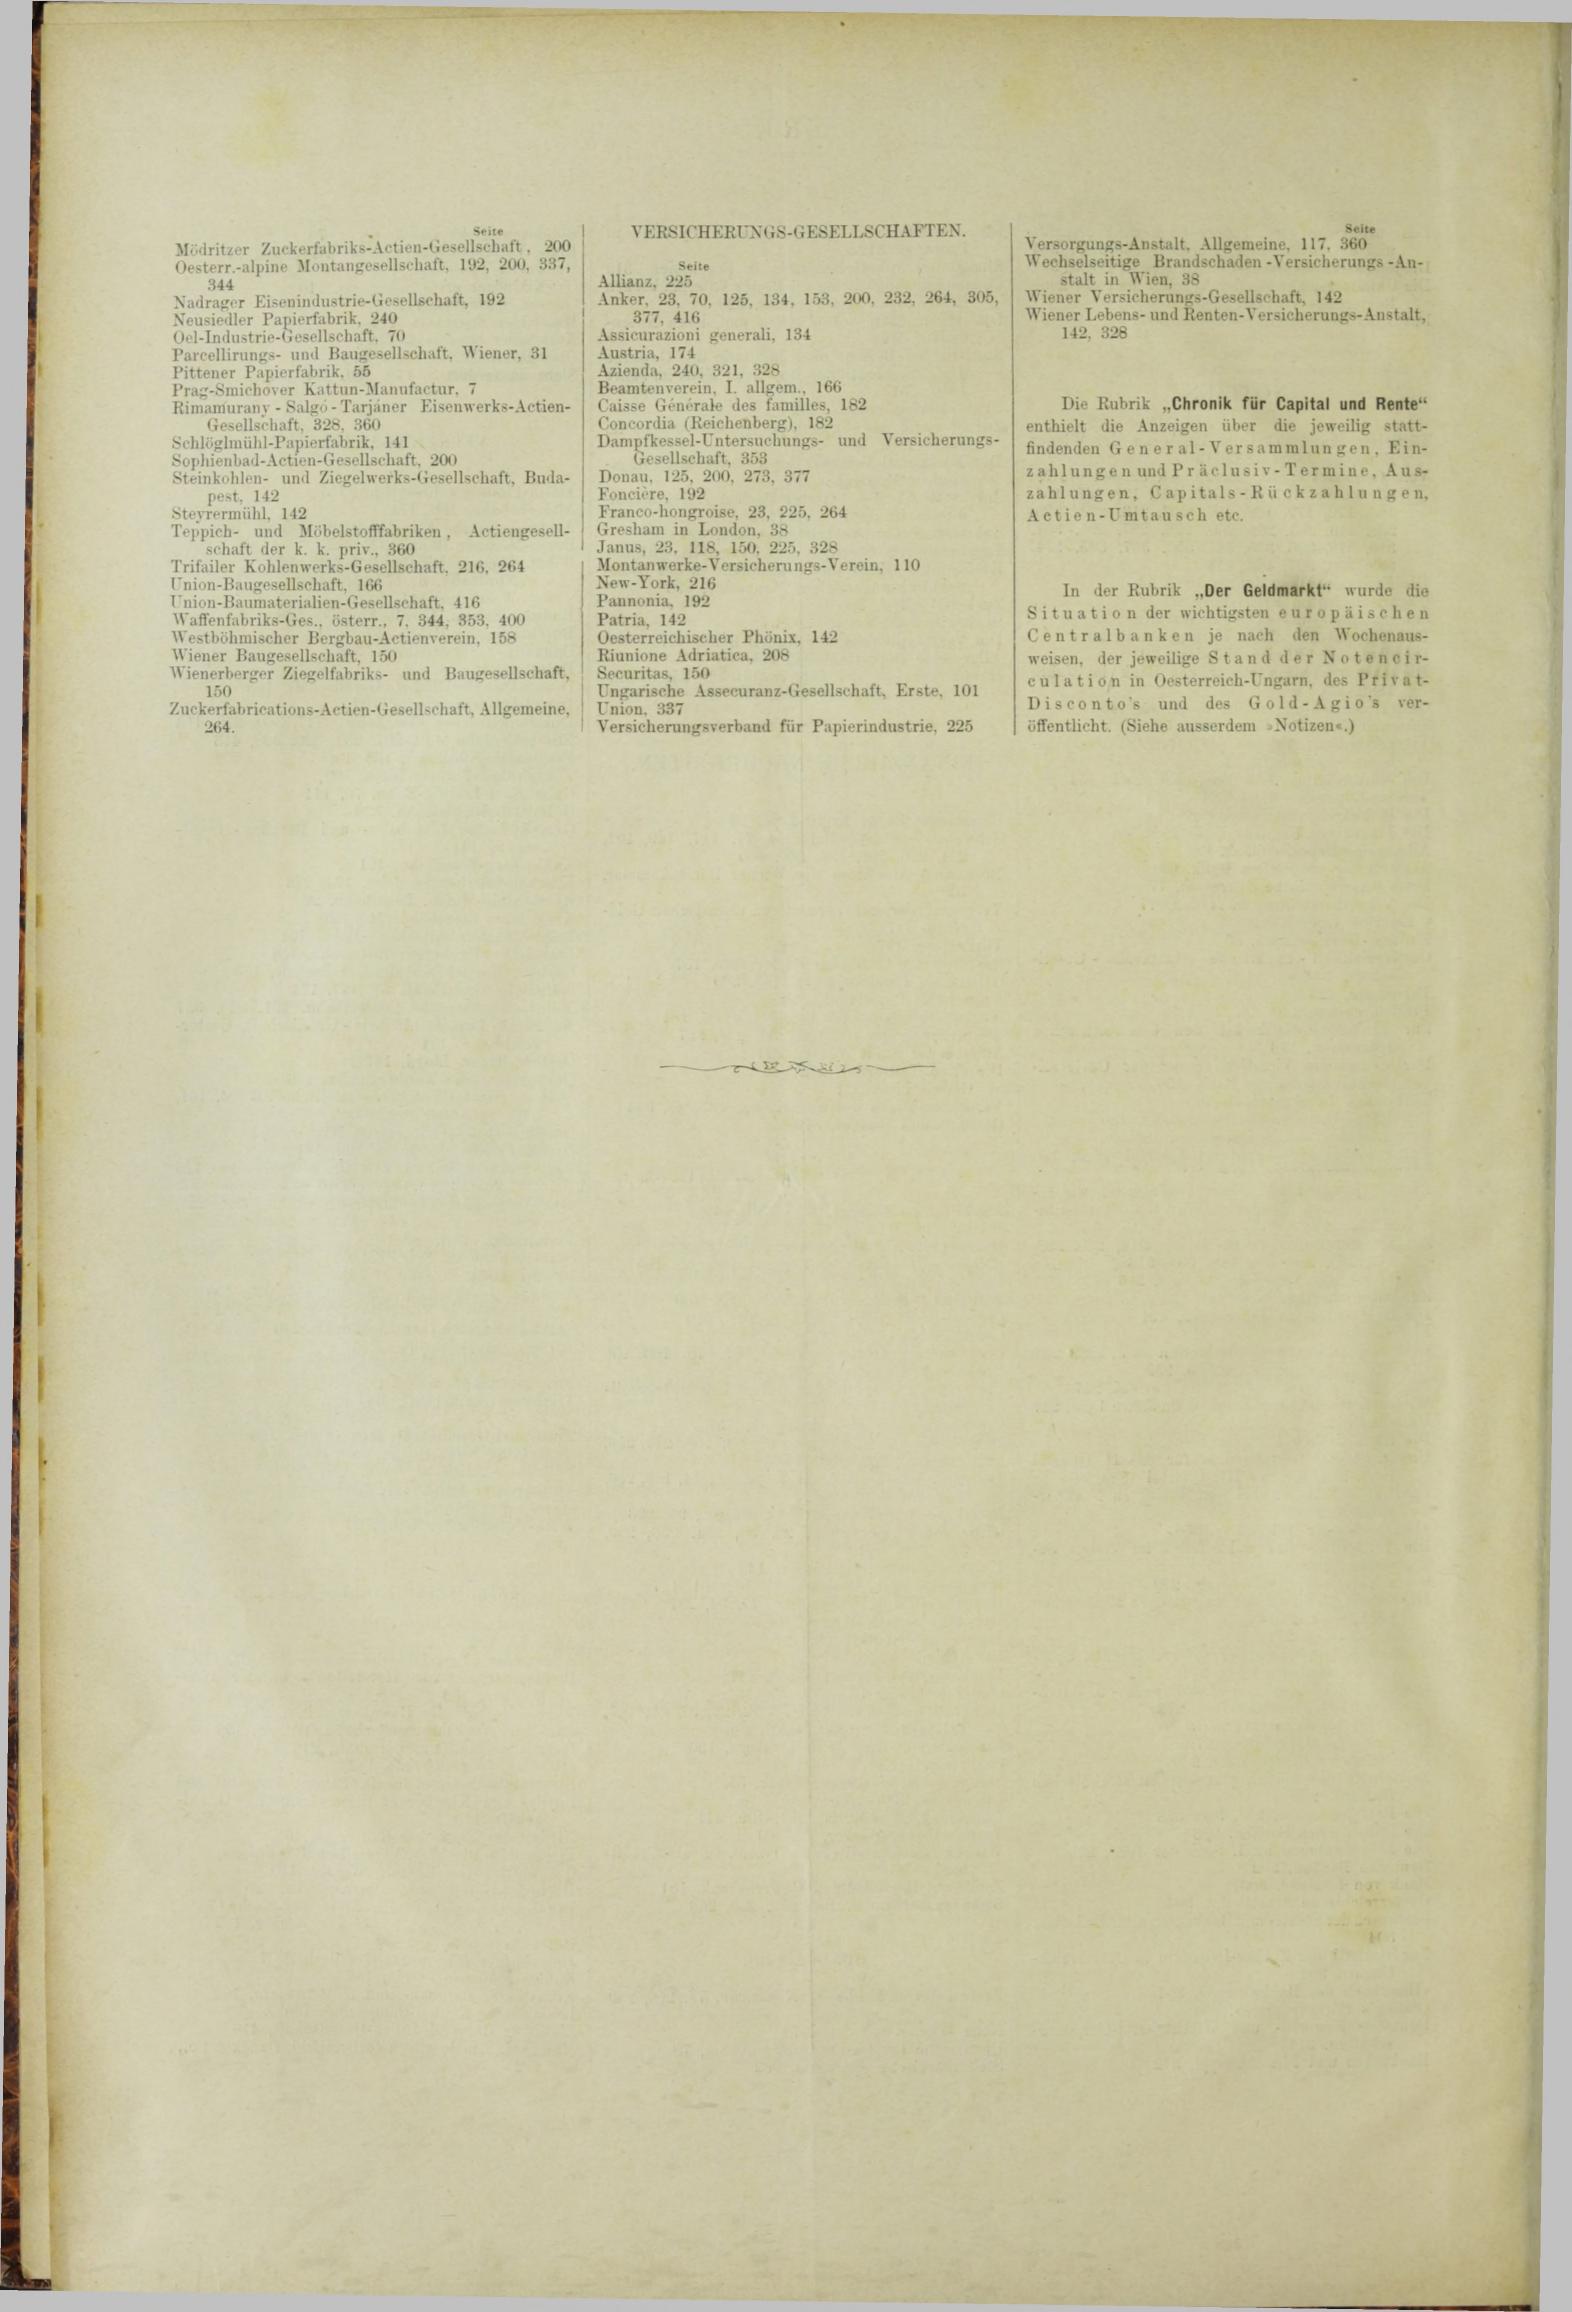 Der Tresor 29.03.1883 - Seite 12